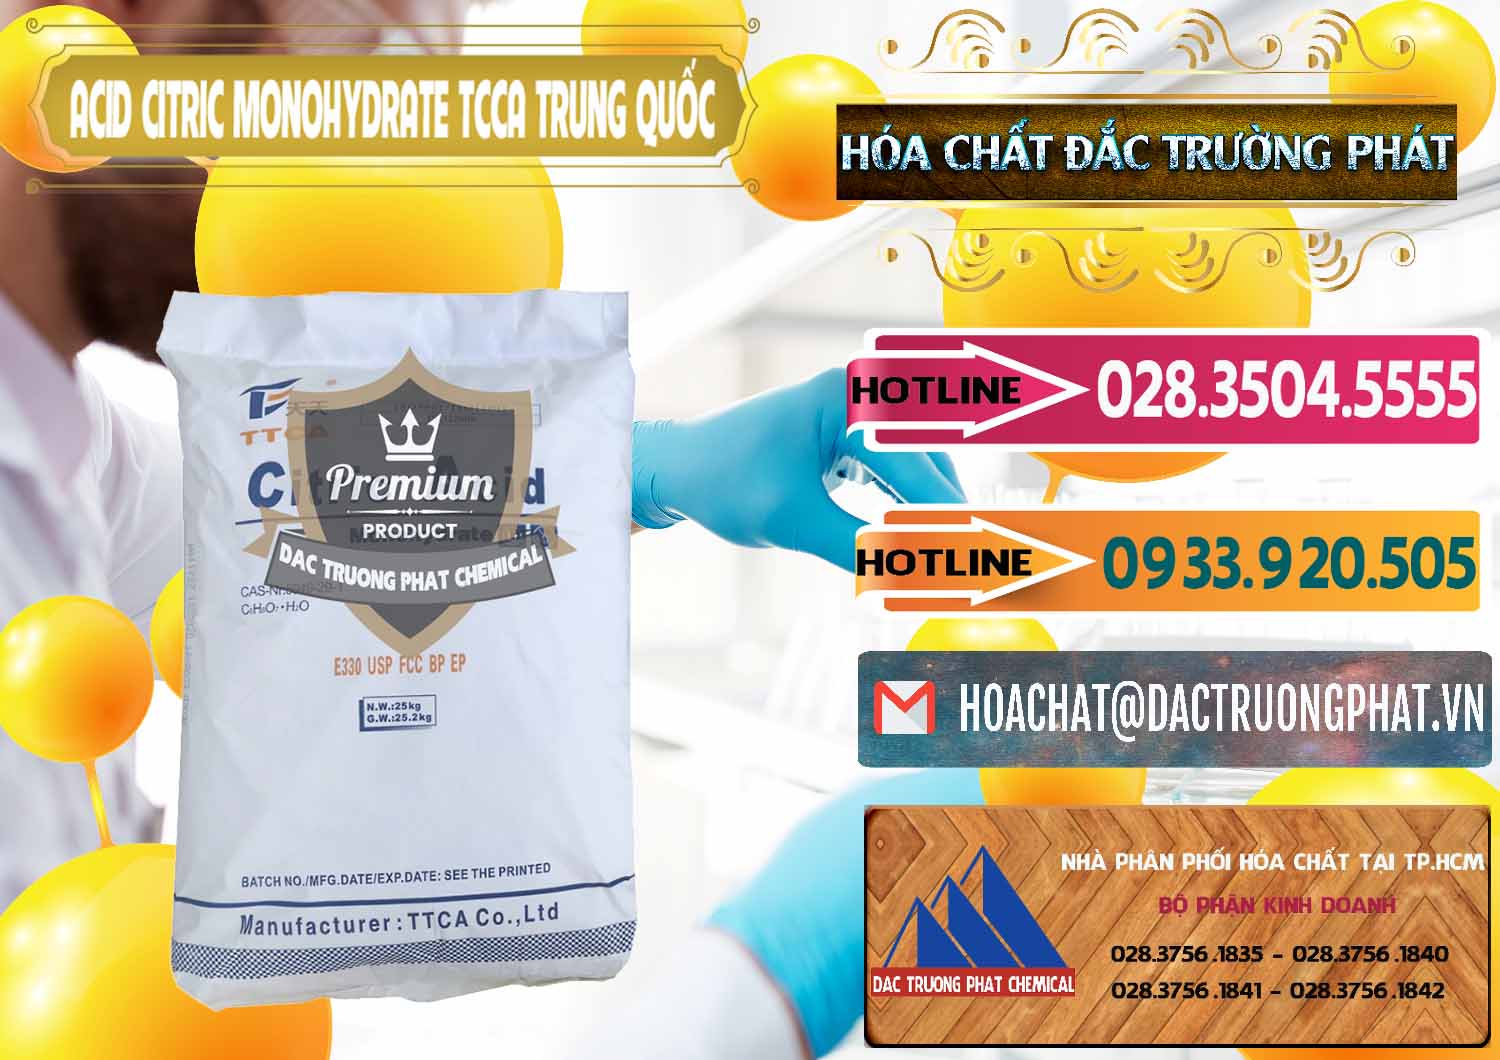 Đơn vị chuyên bán - cung cấp Acid Citric - Axit Citric Monohydrate TCCA Trung Quốc China - 0441 - Cty chuyên kinh doanh - cung cấp hóa chất tại TP.HCM - dactruongphat.vn